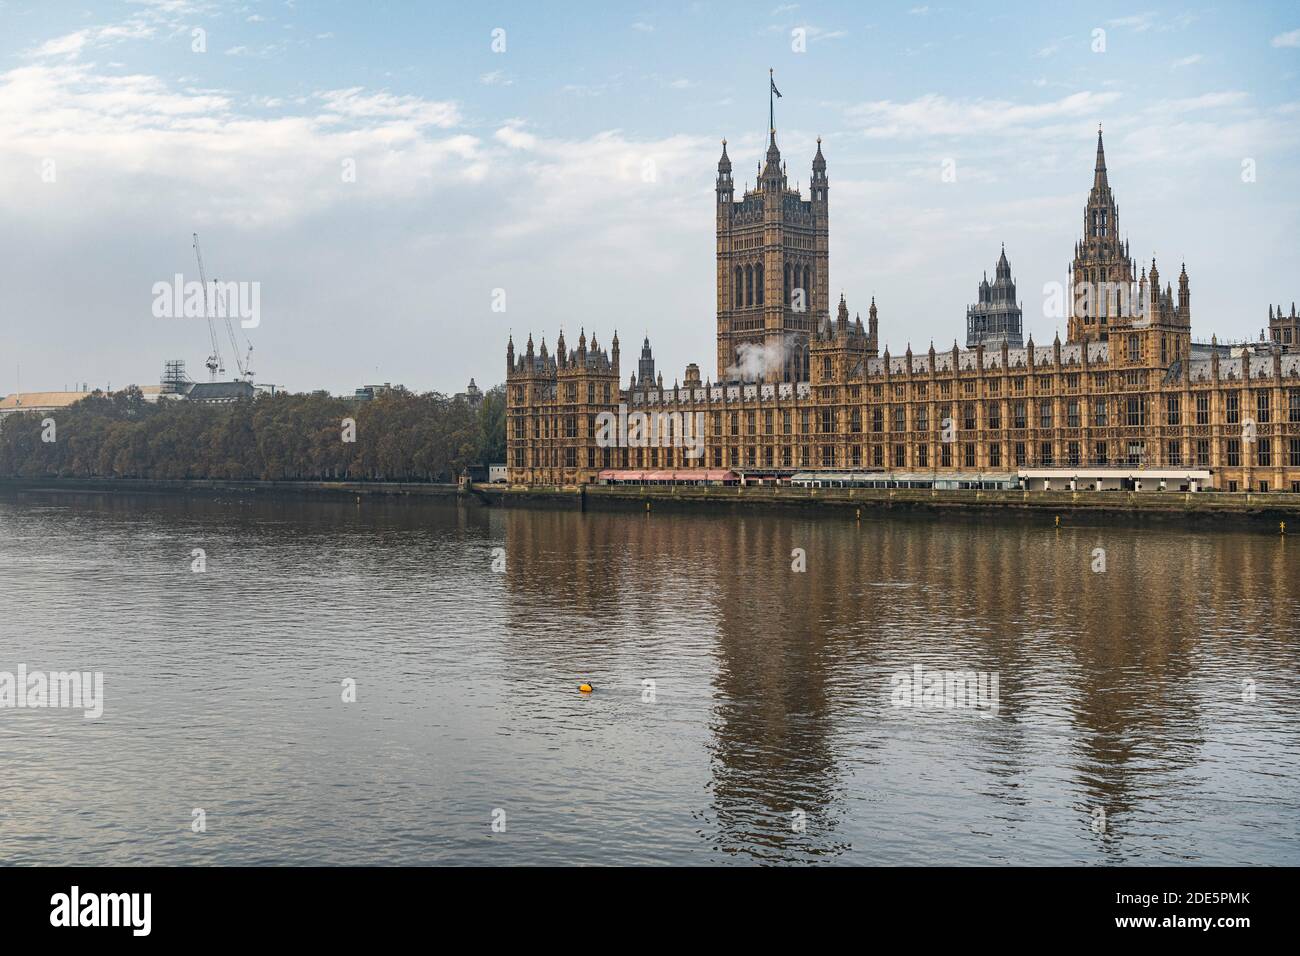 Maisons du Parlement, le bâtiment emblématique de Londres et l'attraction touristique avec ciel bleu vif, tourné dans le cadre du confinement de Covid-19 coronavirus en Angleterre, au Royaume-Uni Banque D'Images